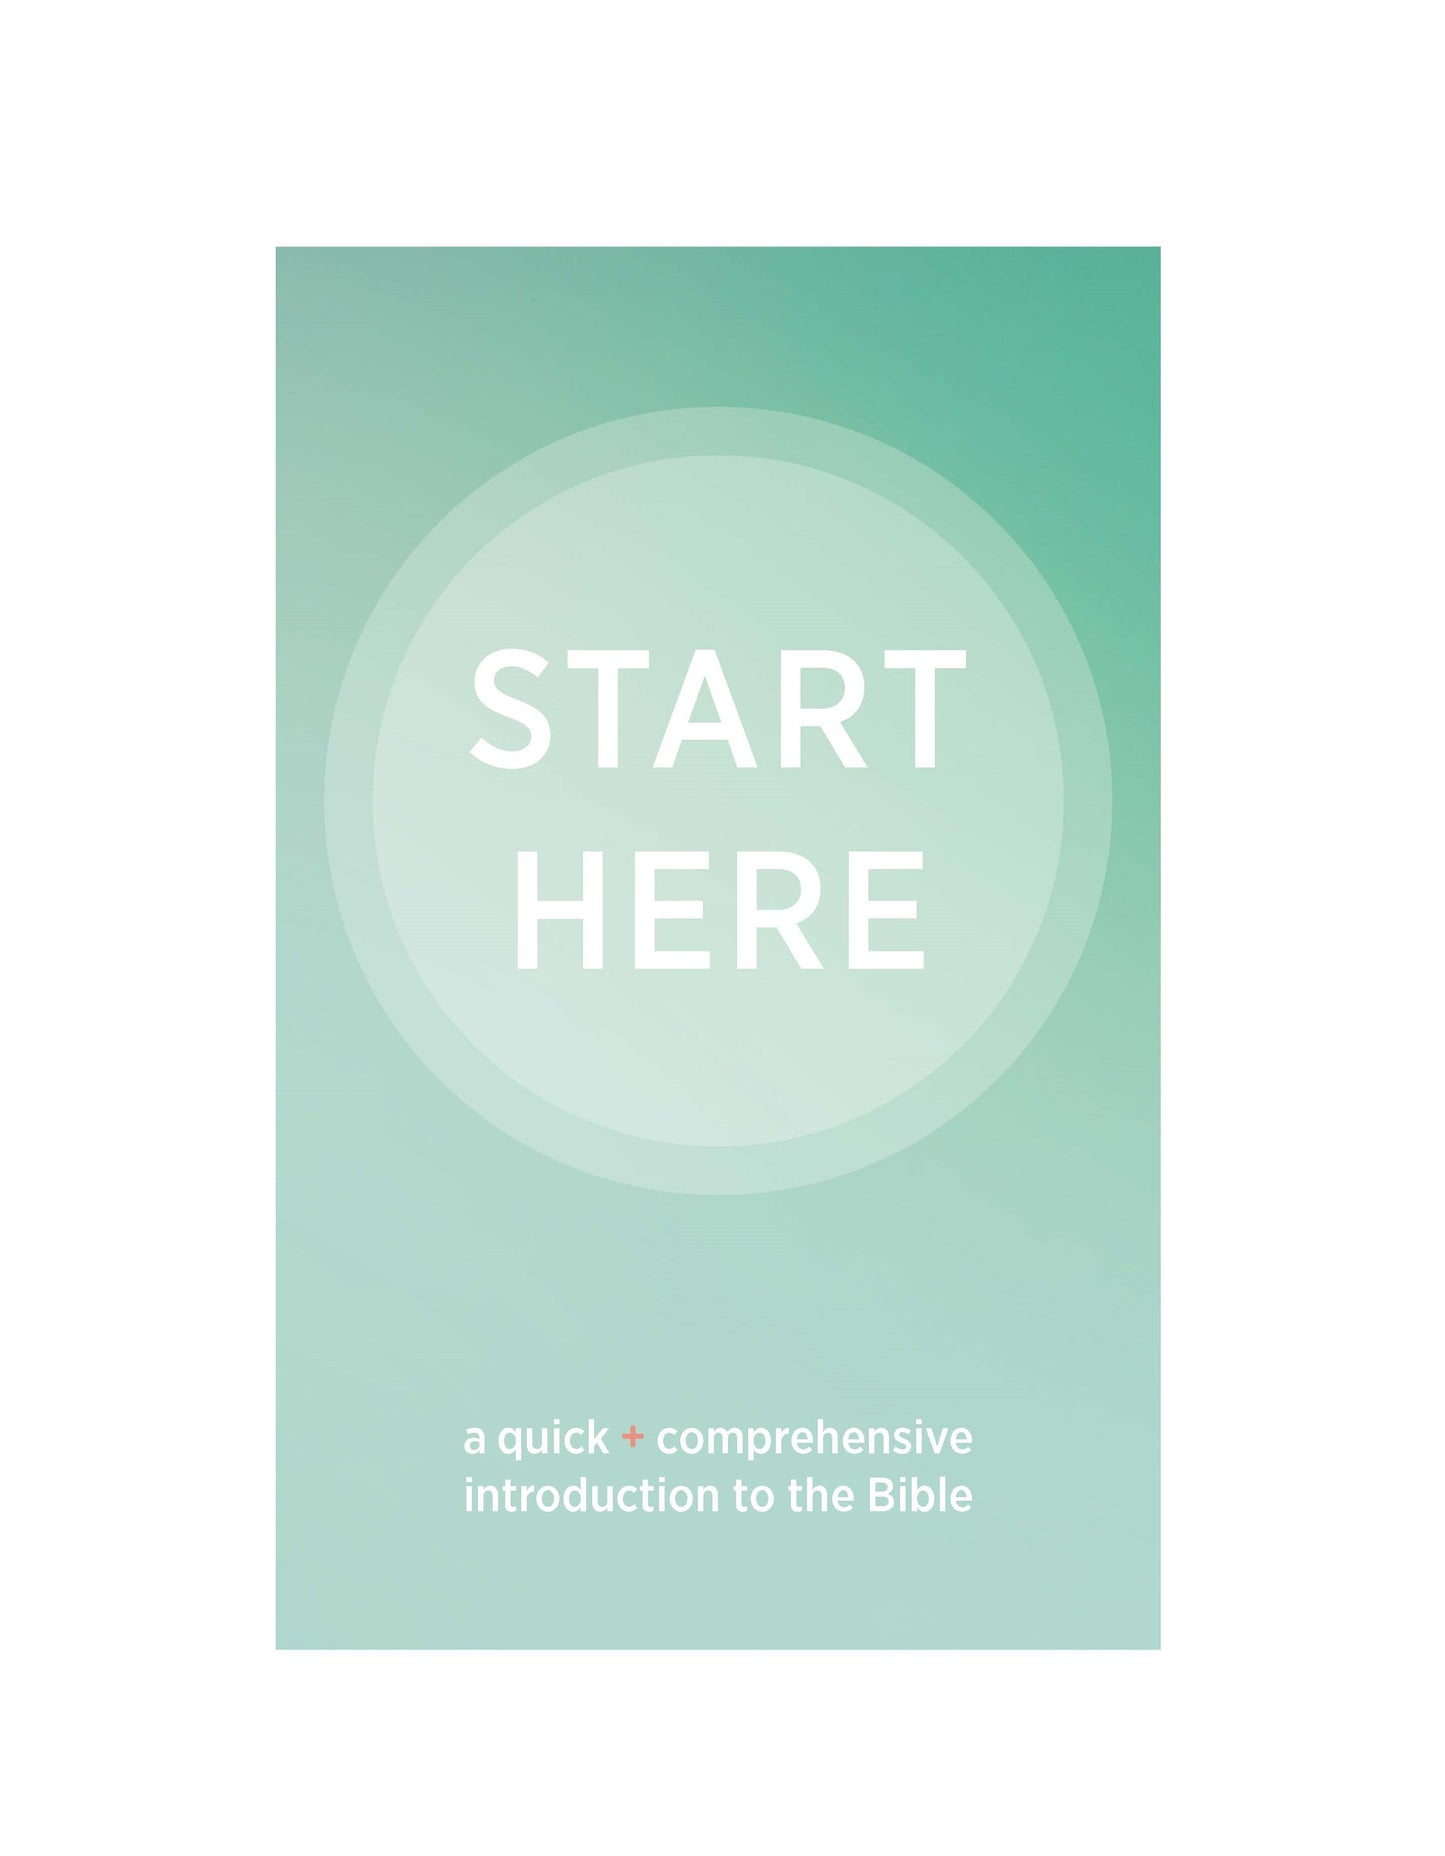 Comience aquí: una introducción rápida y completa a la Biblia con Deuterocanónicos y plan de lectura - Descargar